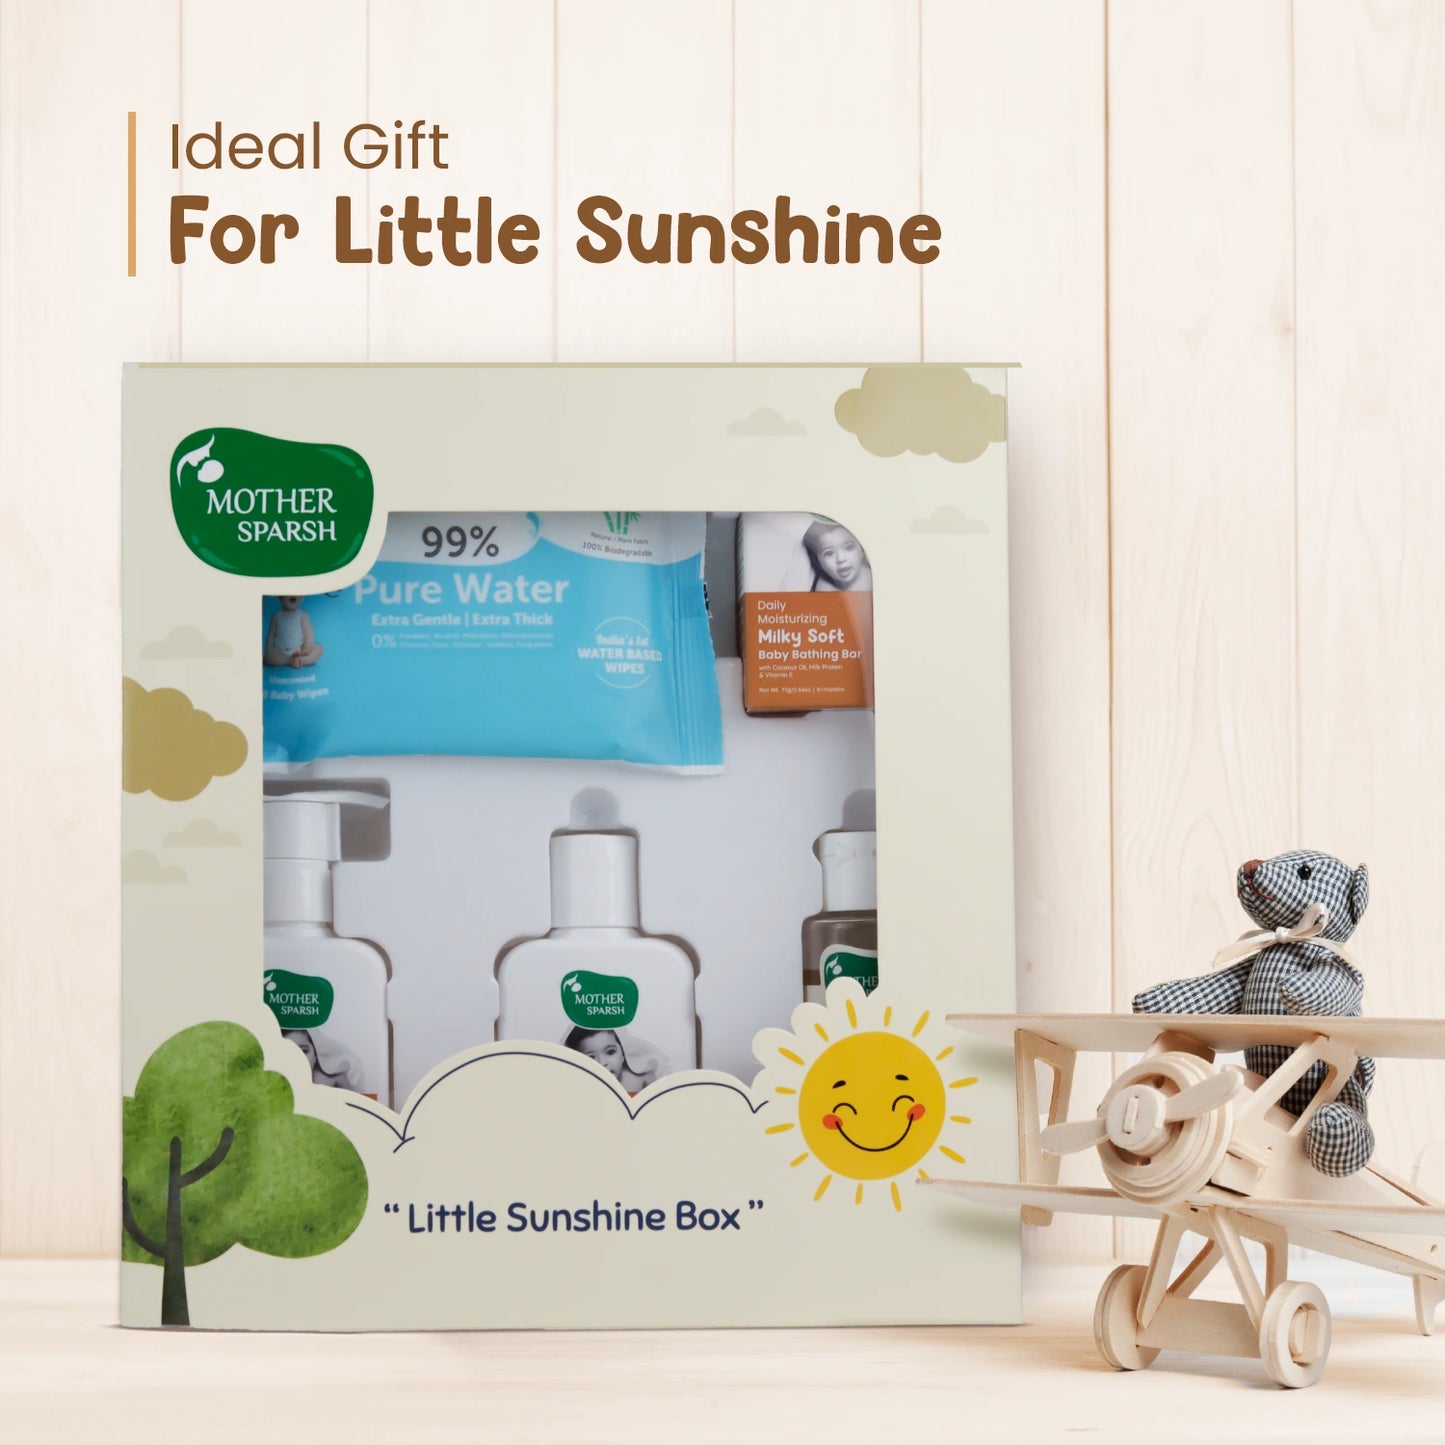 Little Sunshine Box